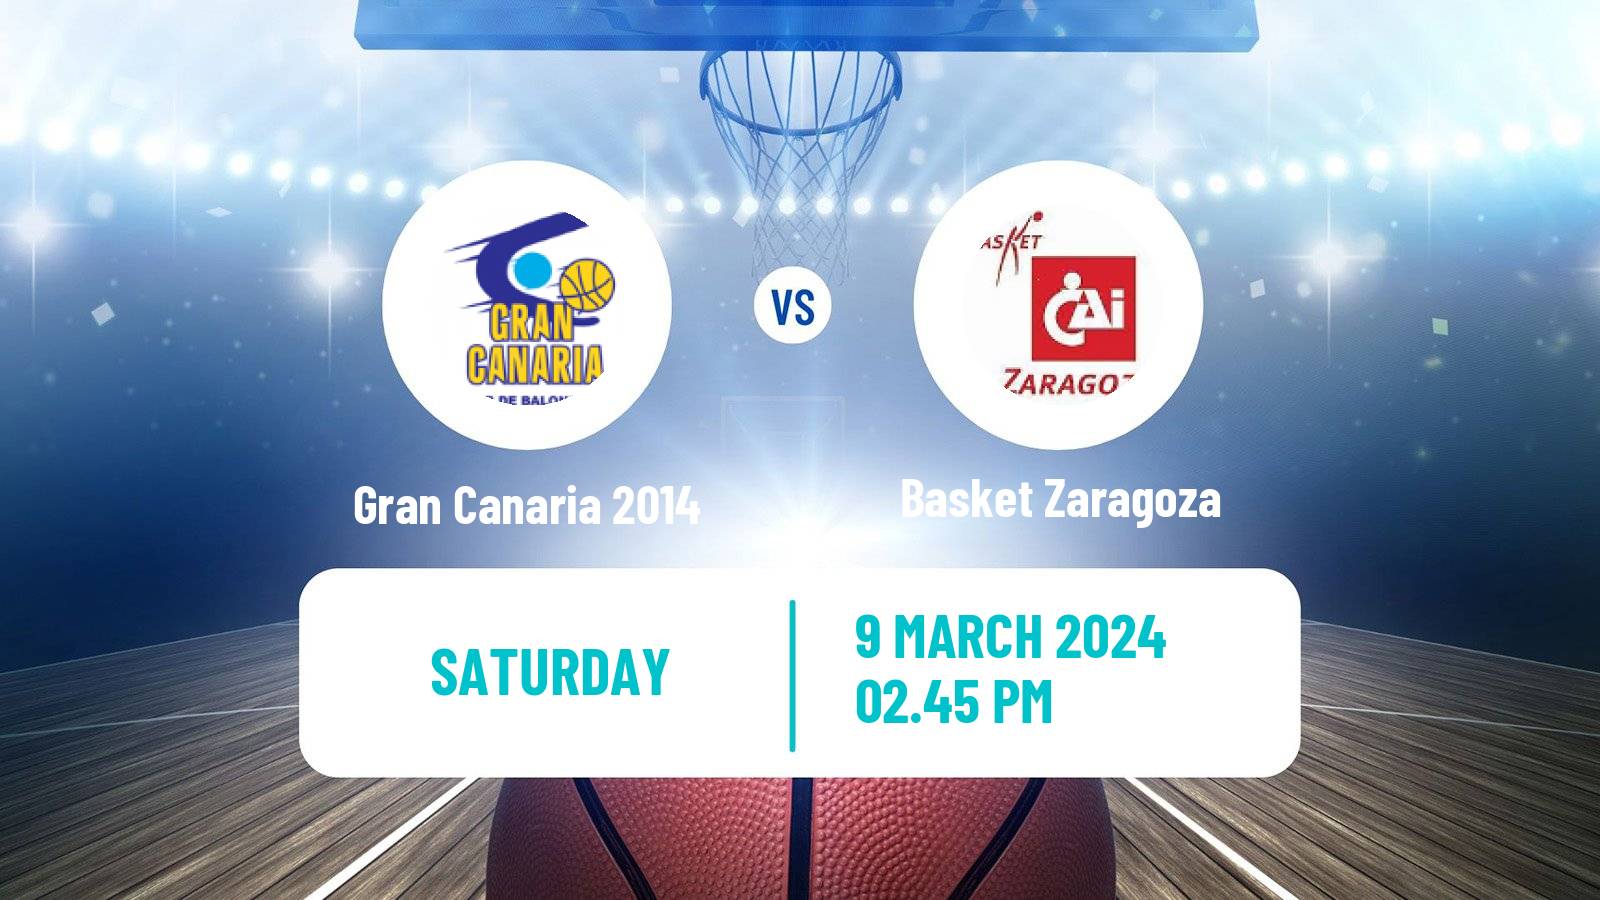 Basketball Spanish ACB League Gran Canaria 2014 - Basket Zaragoza